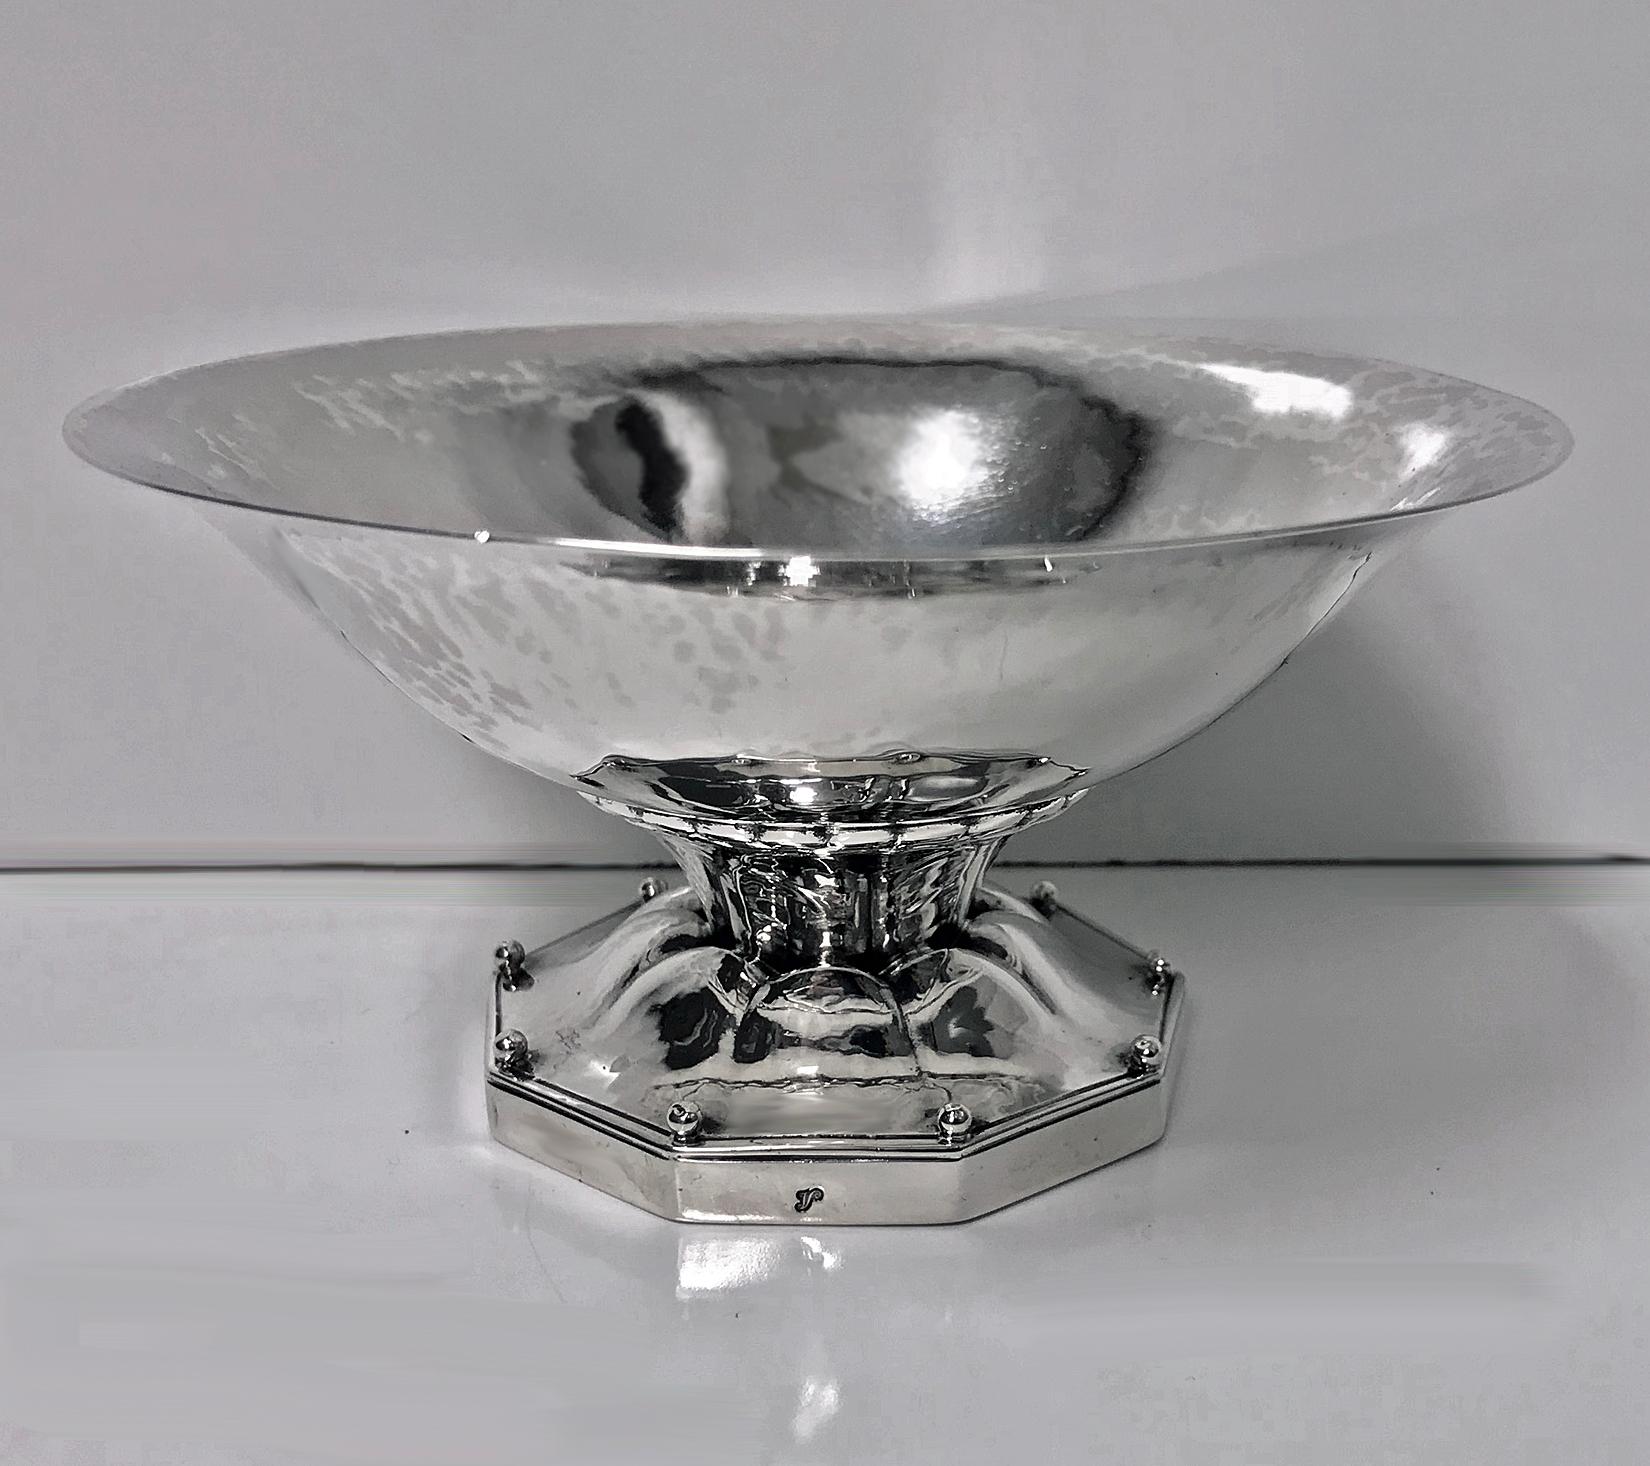 Scandinavian Modern Georg Jensen Sterling Silver Dish 1926-1932, Design No 181A